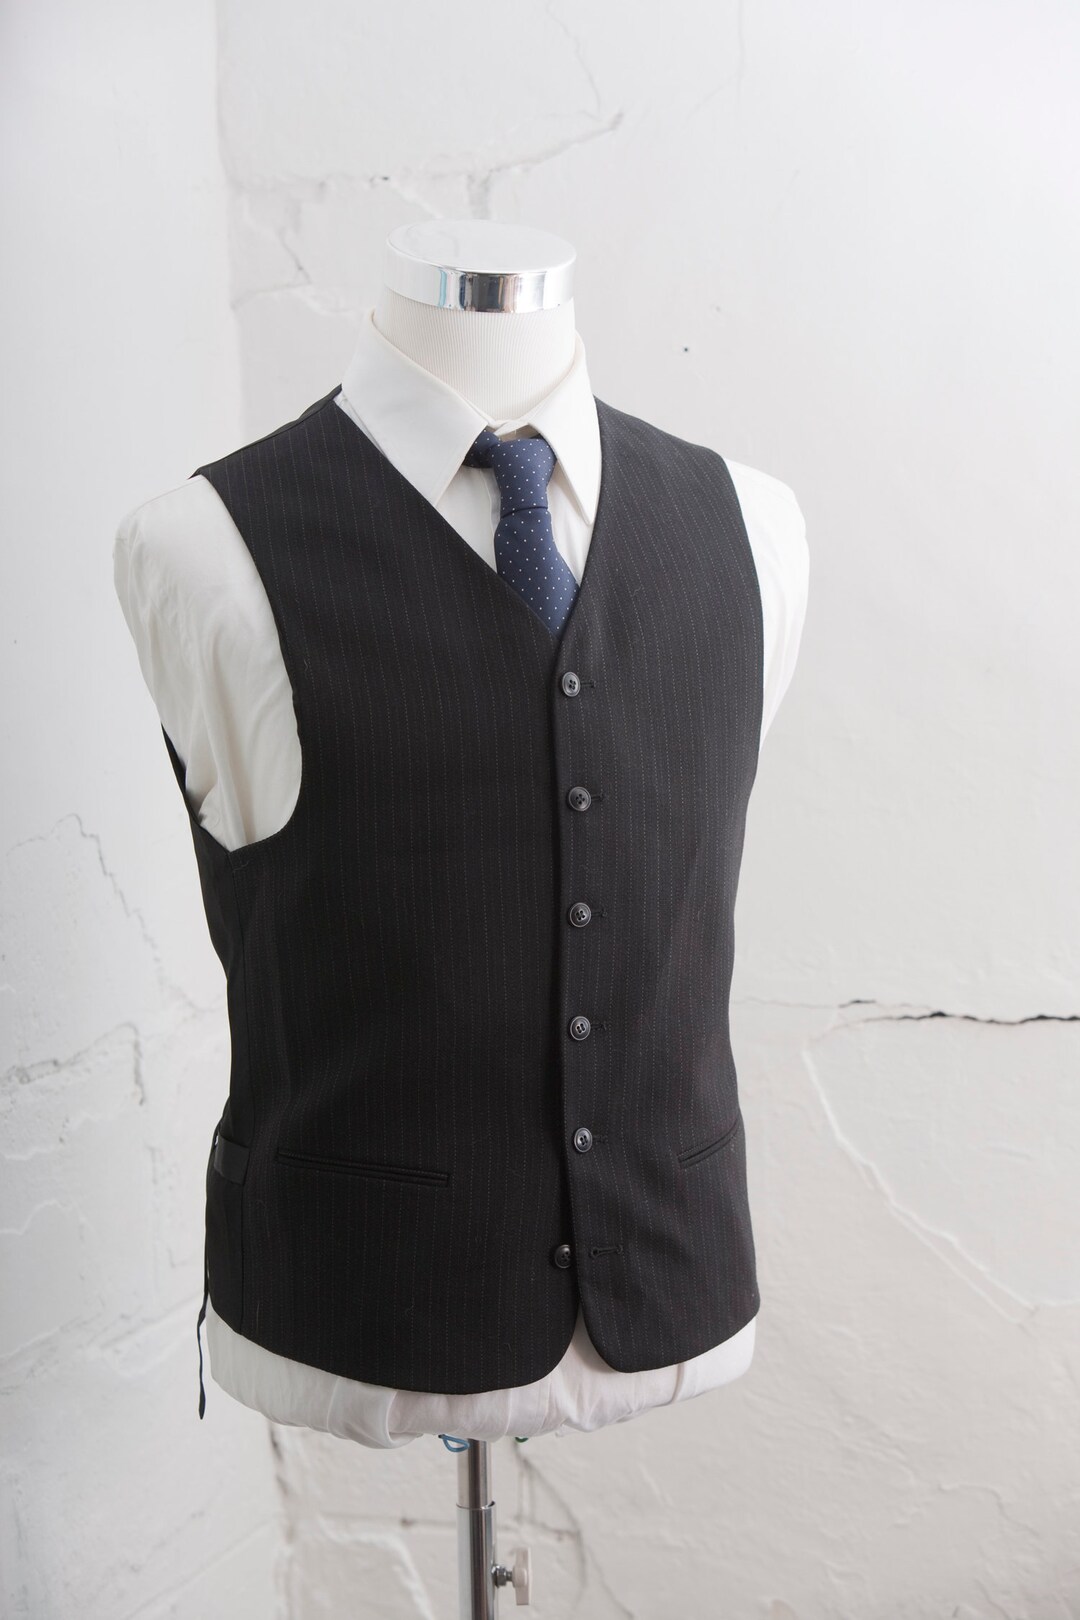 Men's Suit Vest Medium / Vintage Black Waistcoat / Size 40 - Etsy